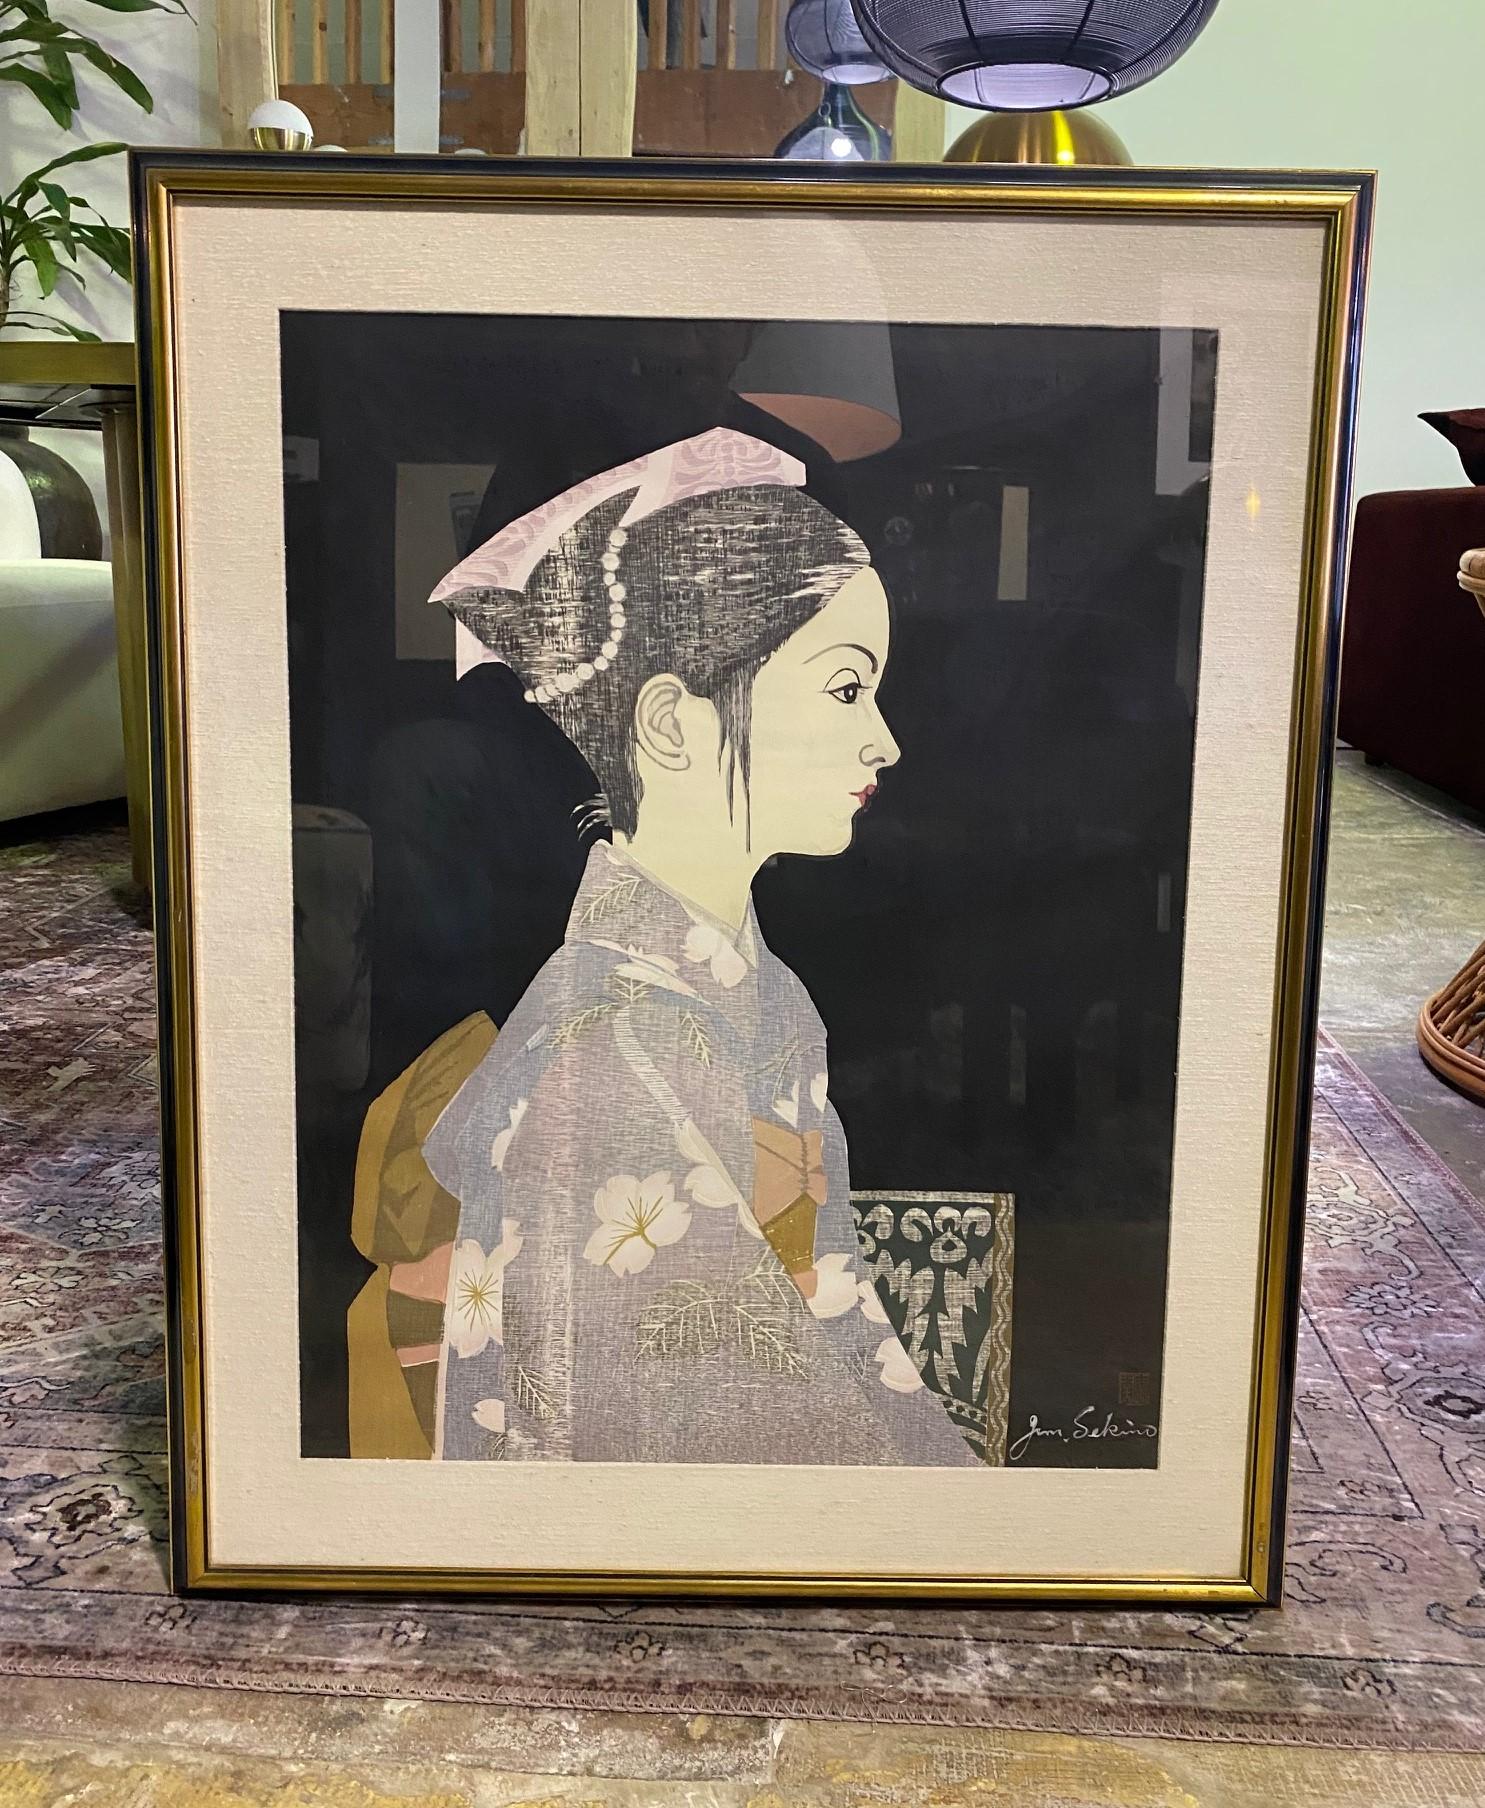 Une gravure sur bois en édition limitée, merveilleusement composée et colorée, réalisée par le célèbre artiste japonais Junichiro Sekino

Cette gravure, qui est intitulée 